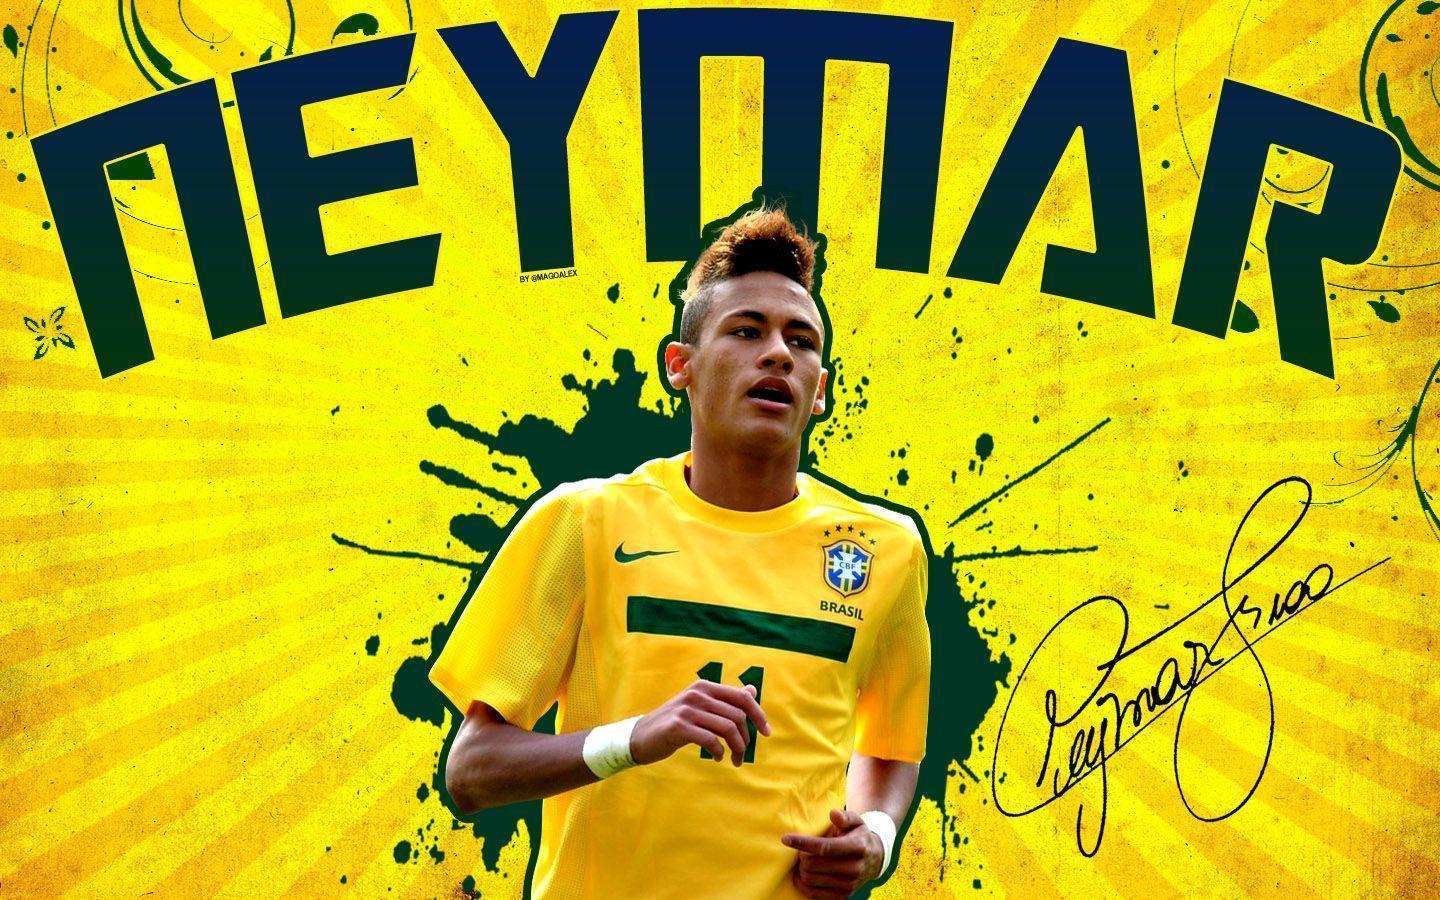 Neymar Jr. / Brasil. Neymar Jr